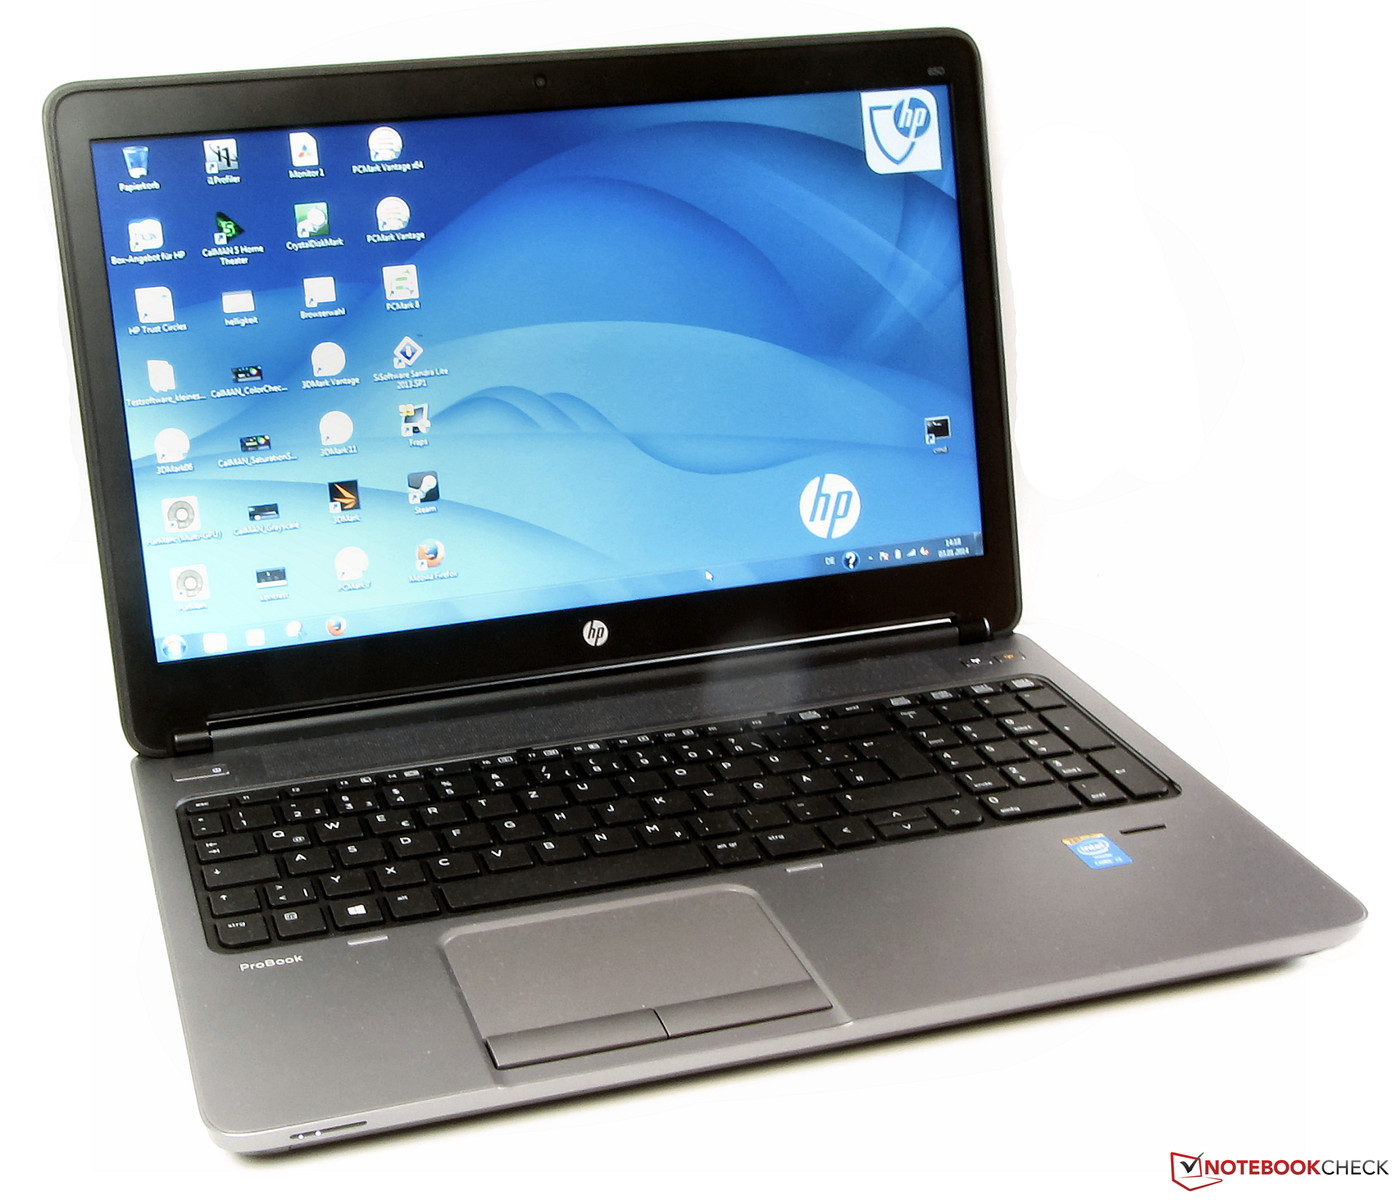 Moderniseren helpen doe alstublieft niet Review HP ProBook 650 G1 H5G74E Notebook - NotebookCheck.net Reviews